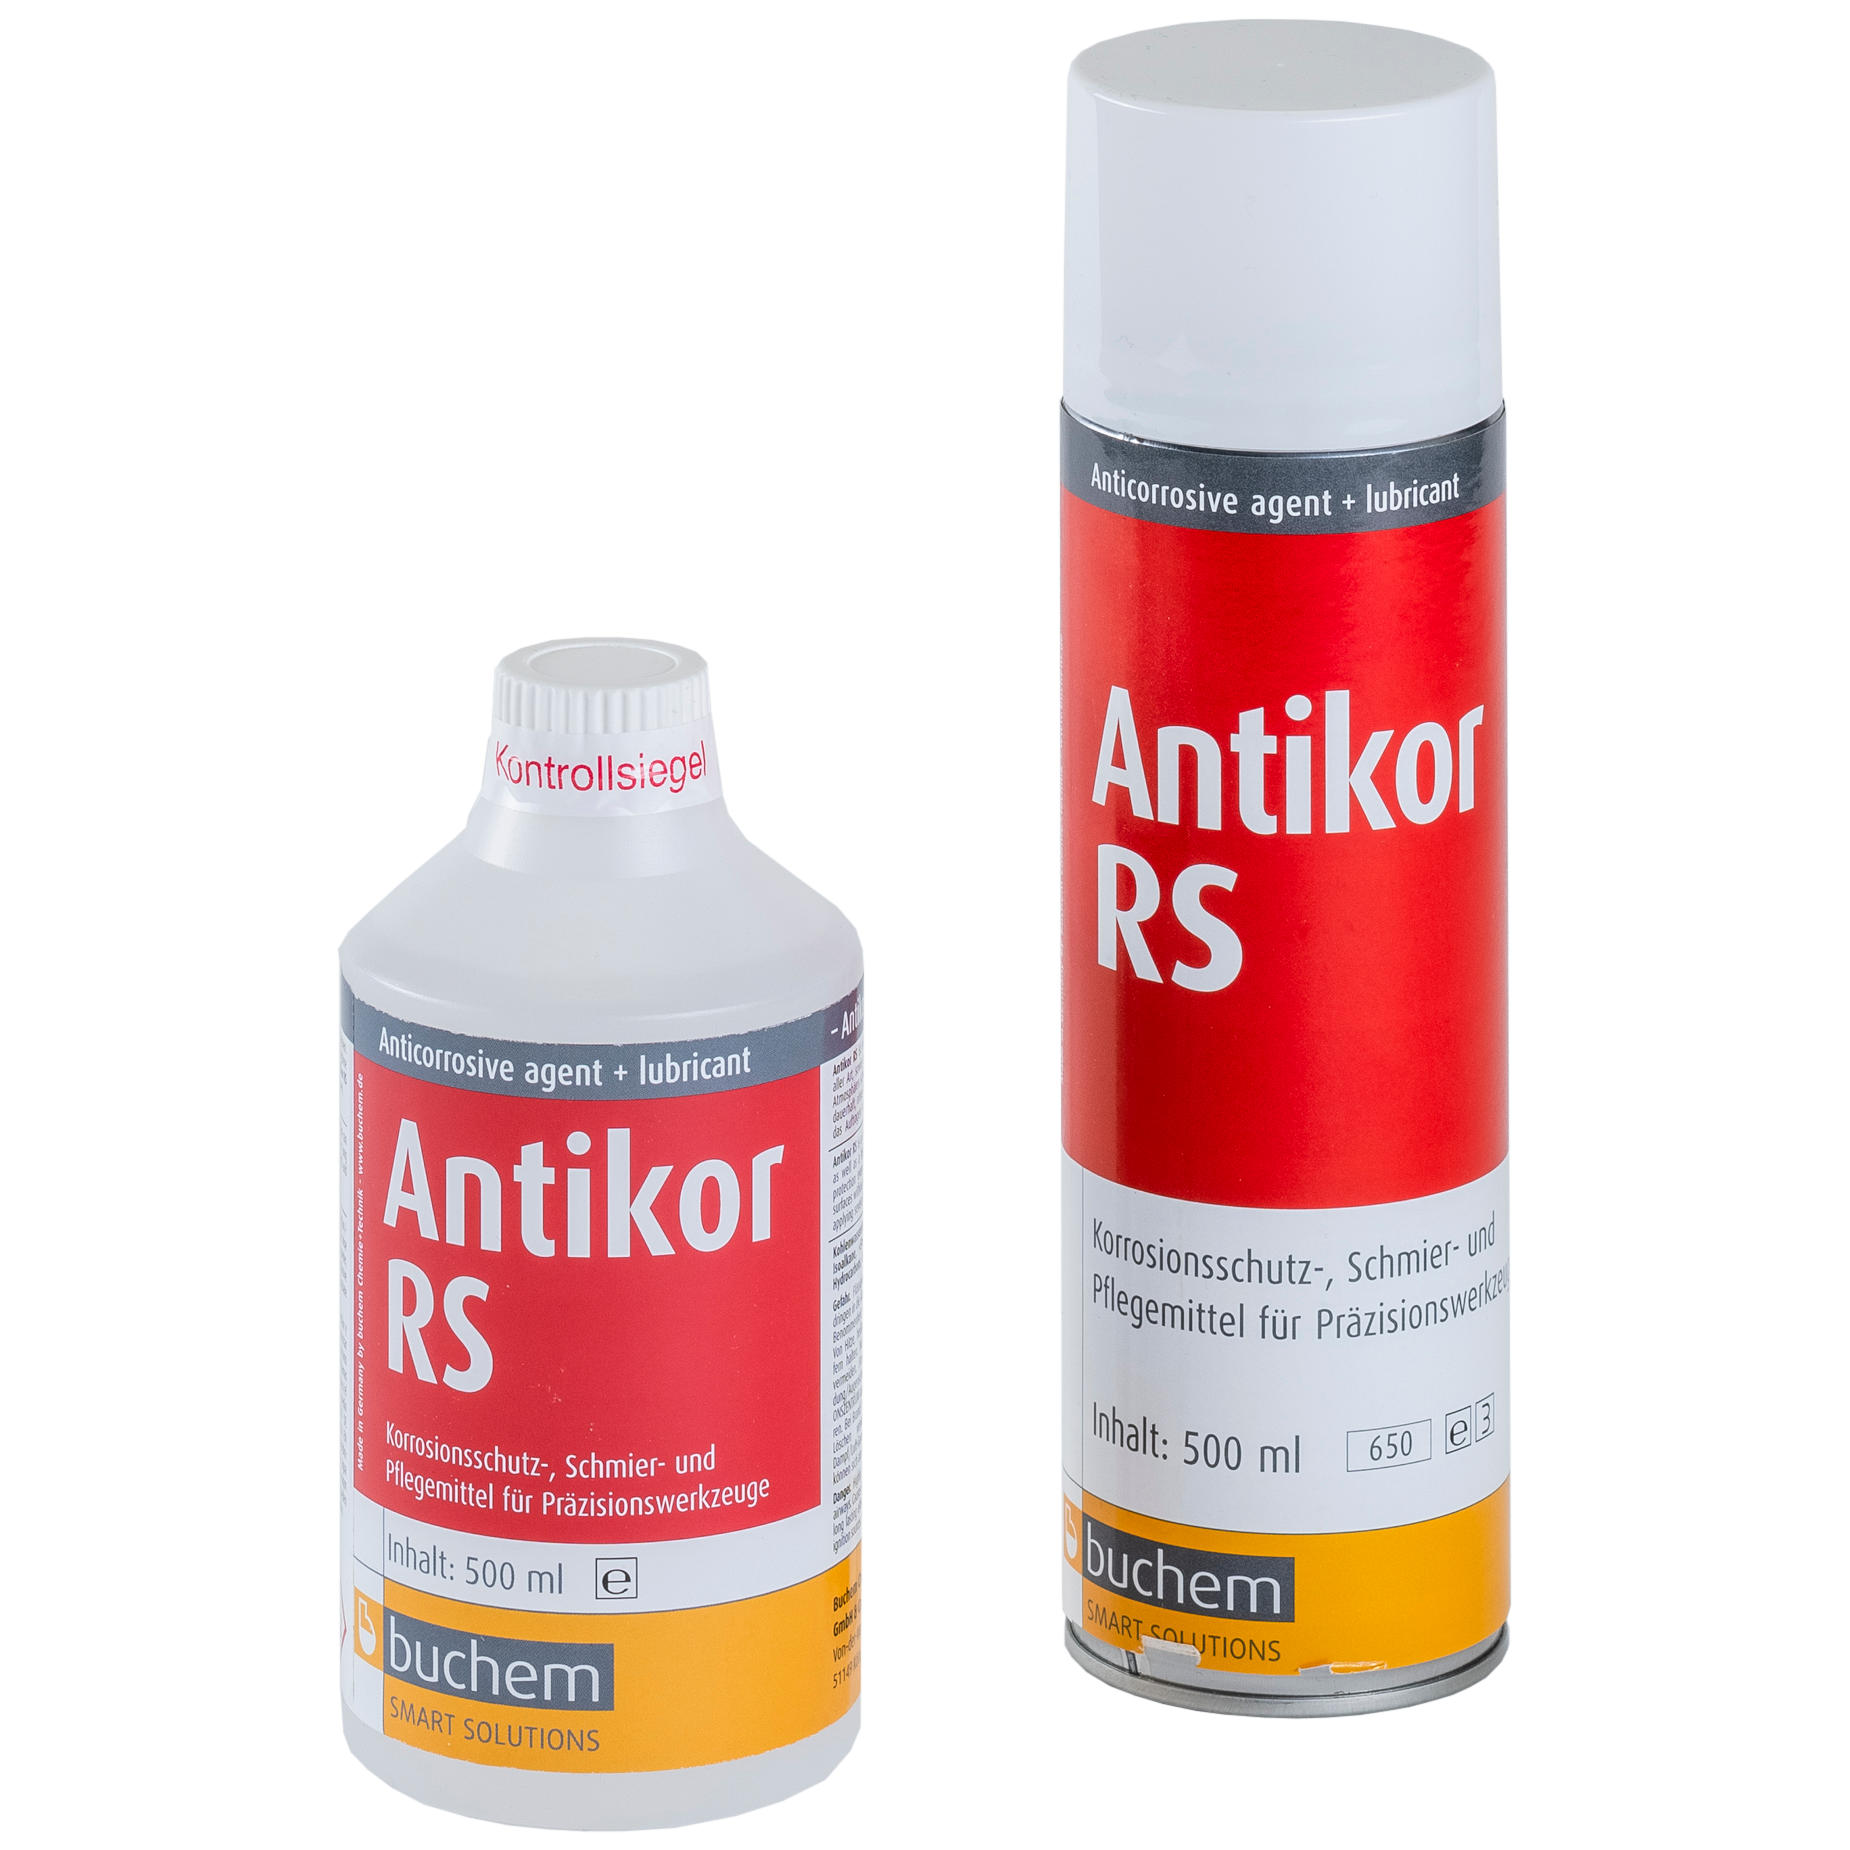 buchem antikor rs - korrosionsschutz & schmiermittel, aerosol, plastikflasche